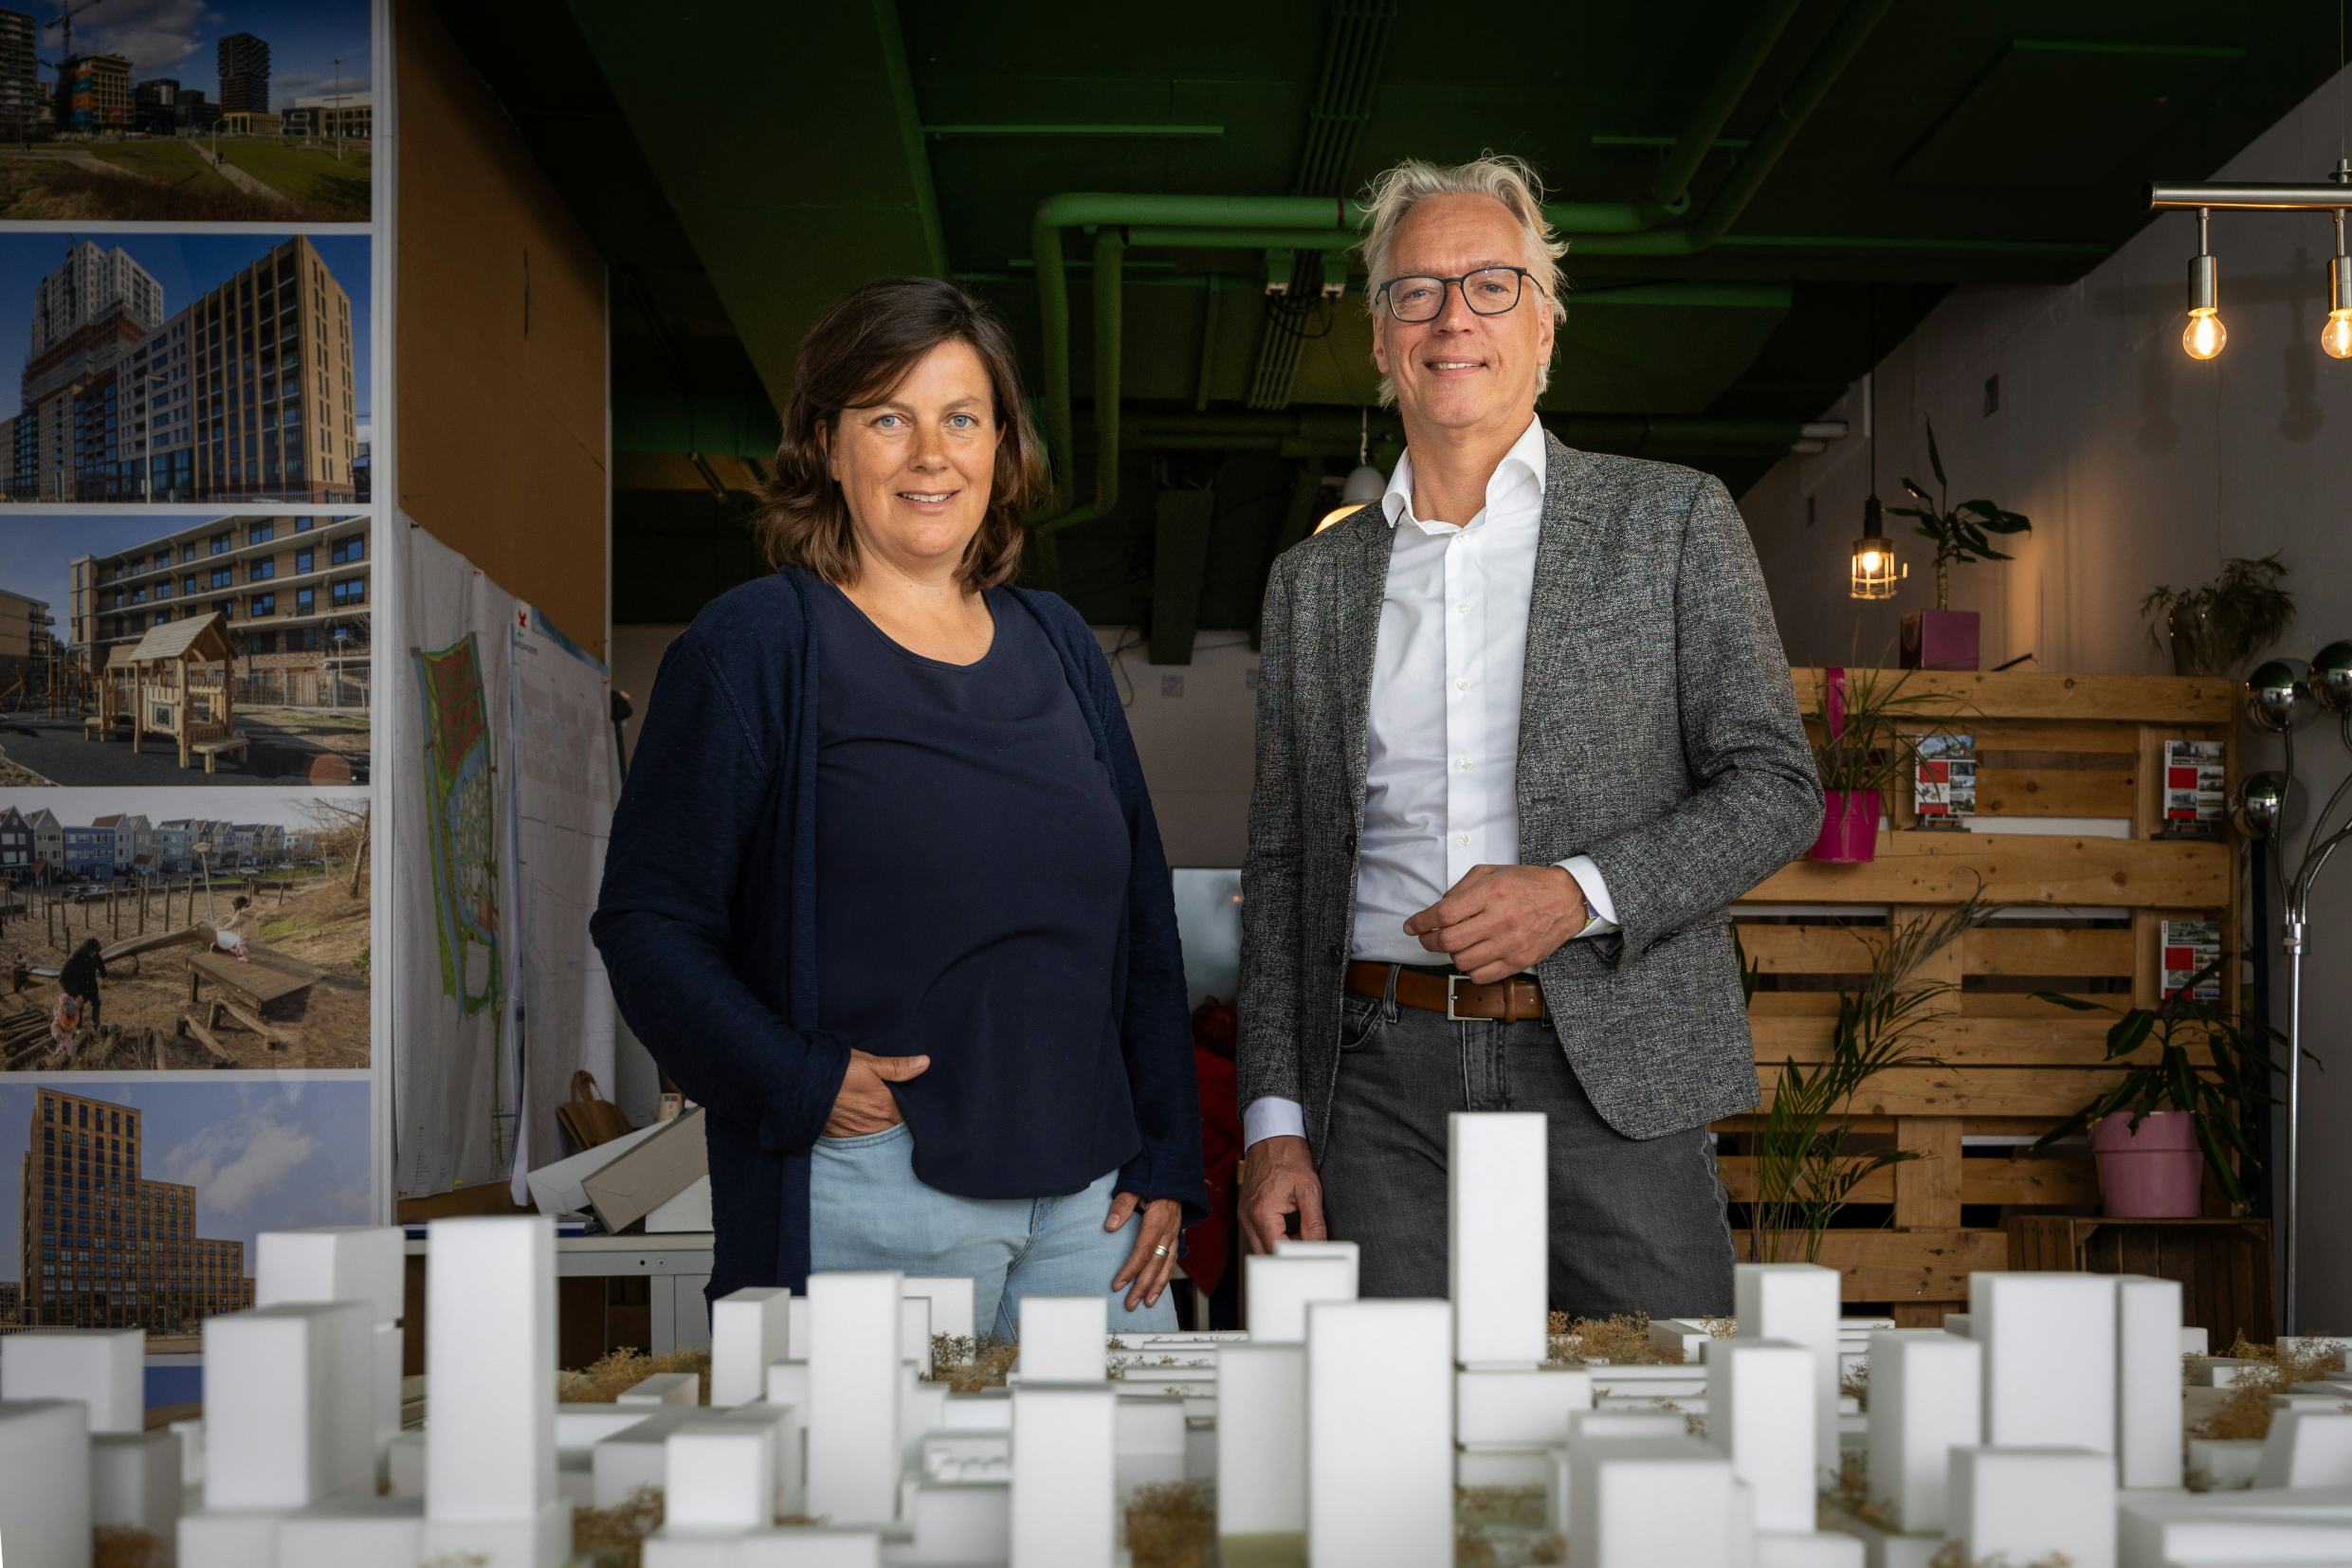 Stedenbouwkundige Martijntje Stam en architect Jos van Eldonk. Foto: Dutch Photo Agency / Diederik van der Laan